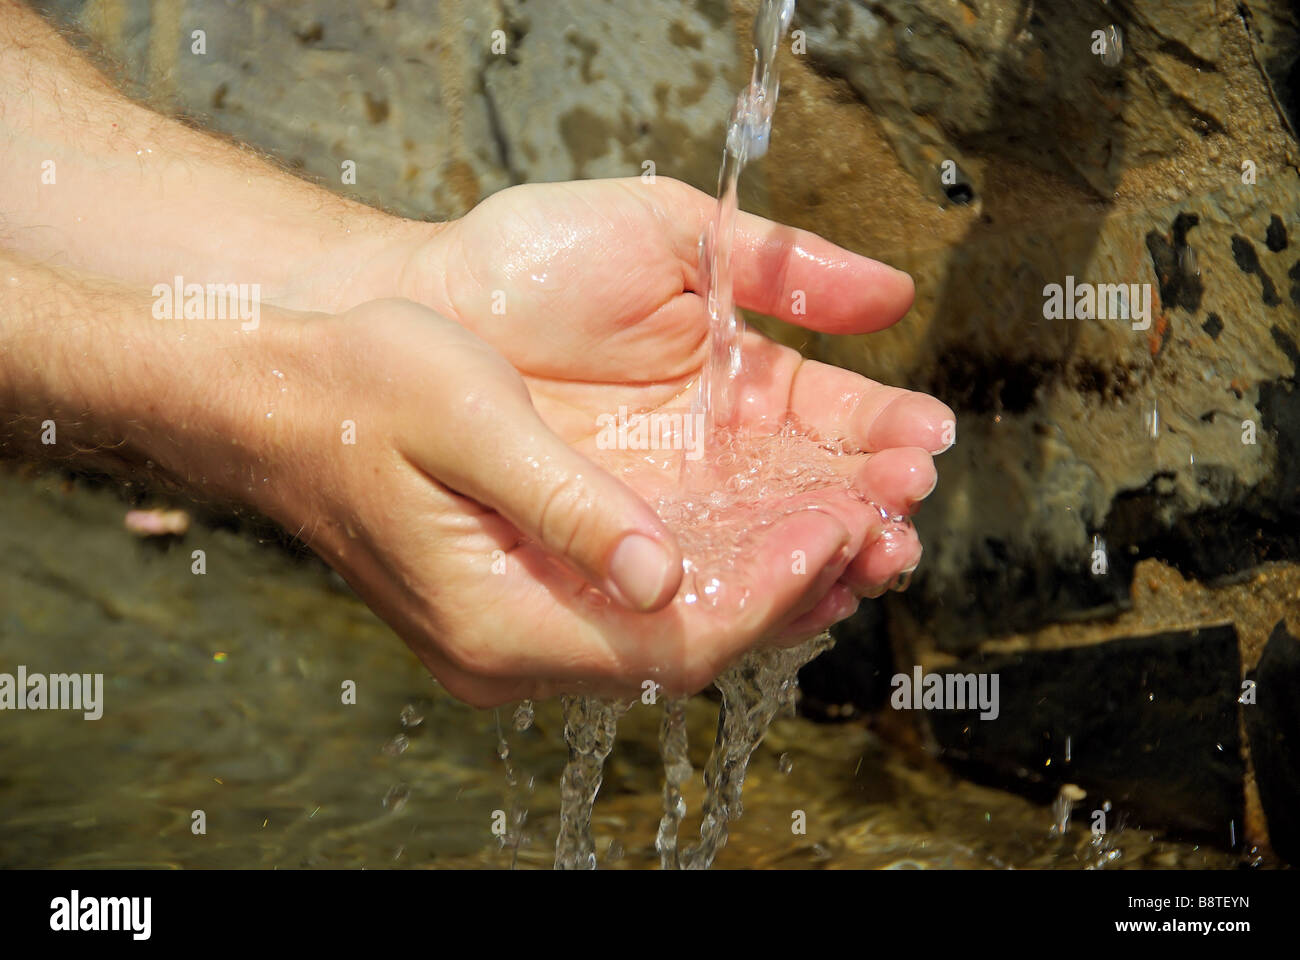 Hände waschen lavaggio delle mani 08 Foto Stock